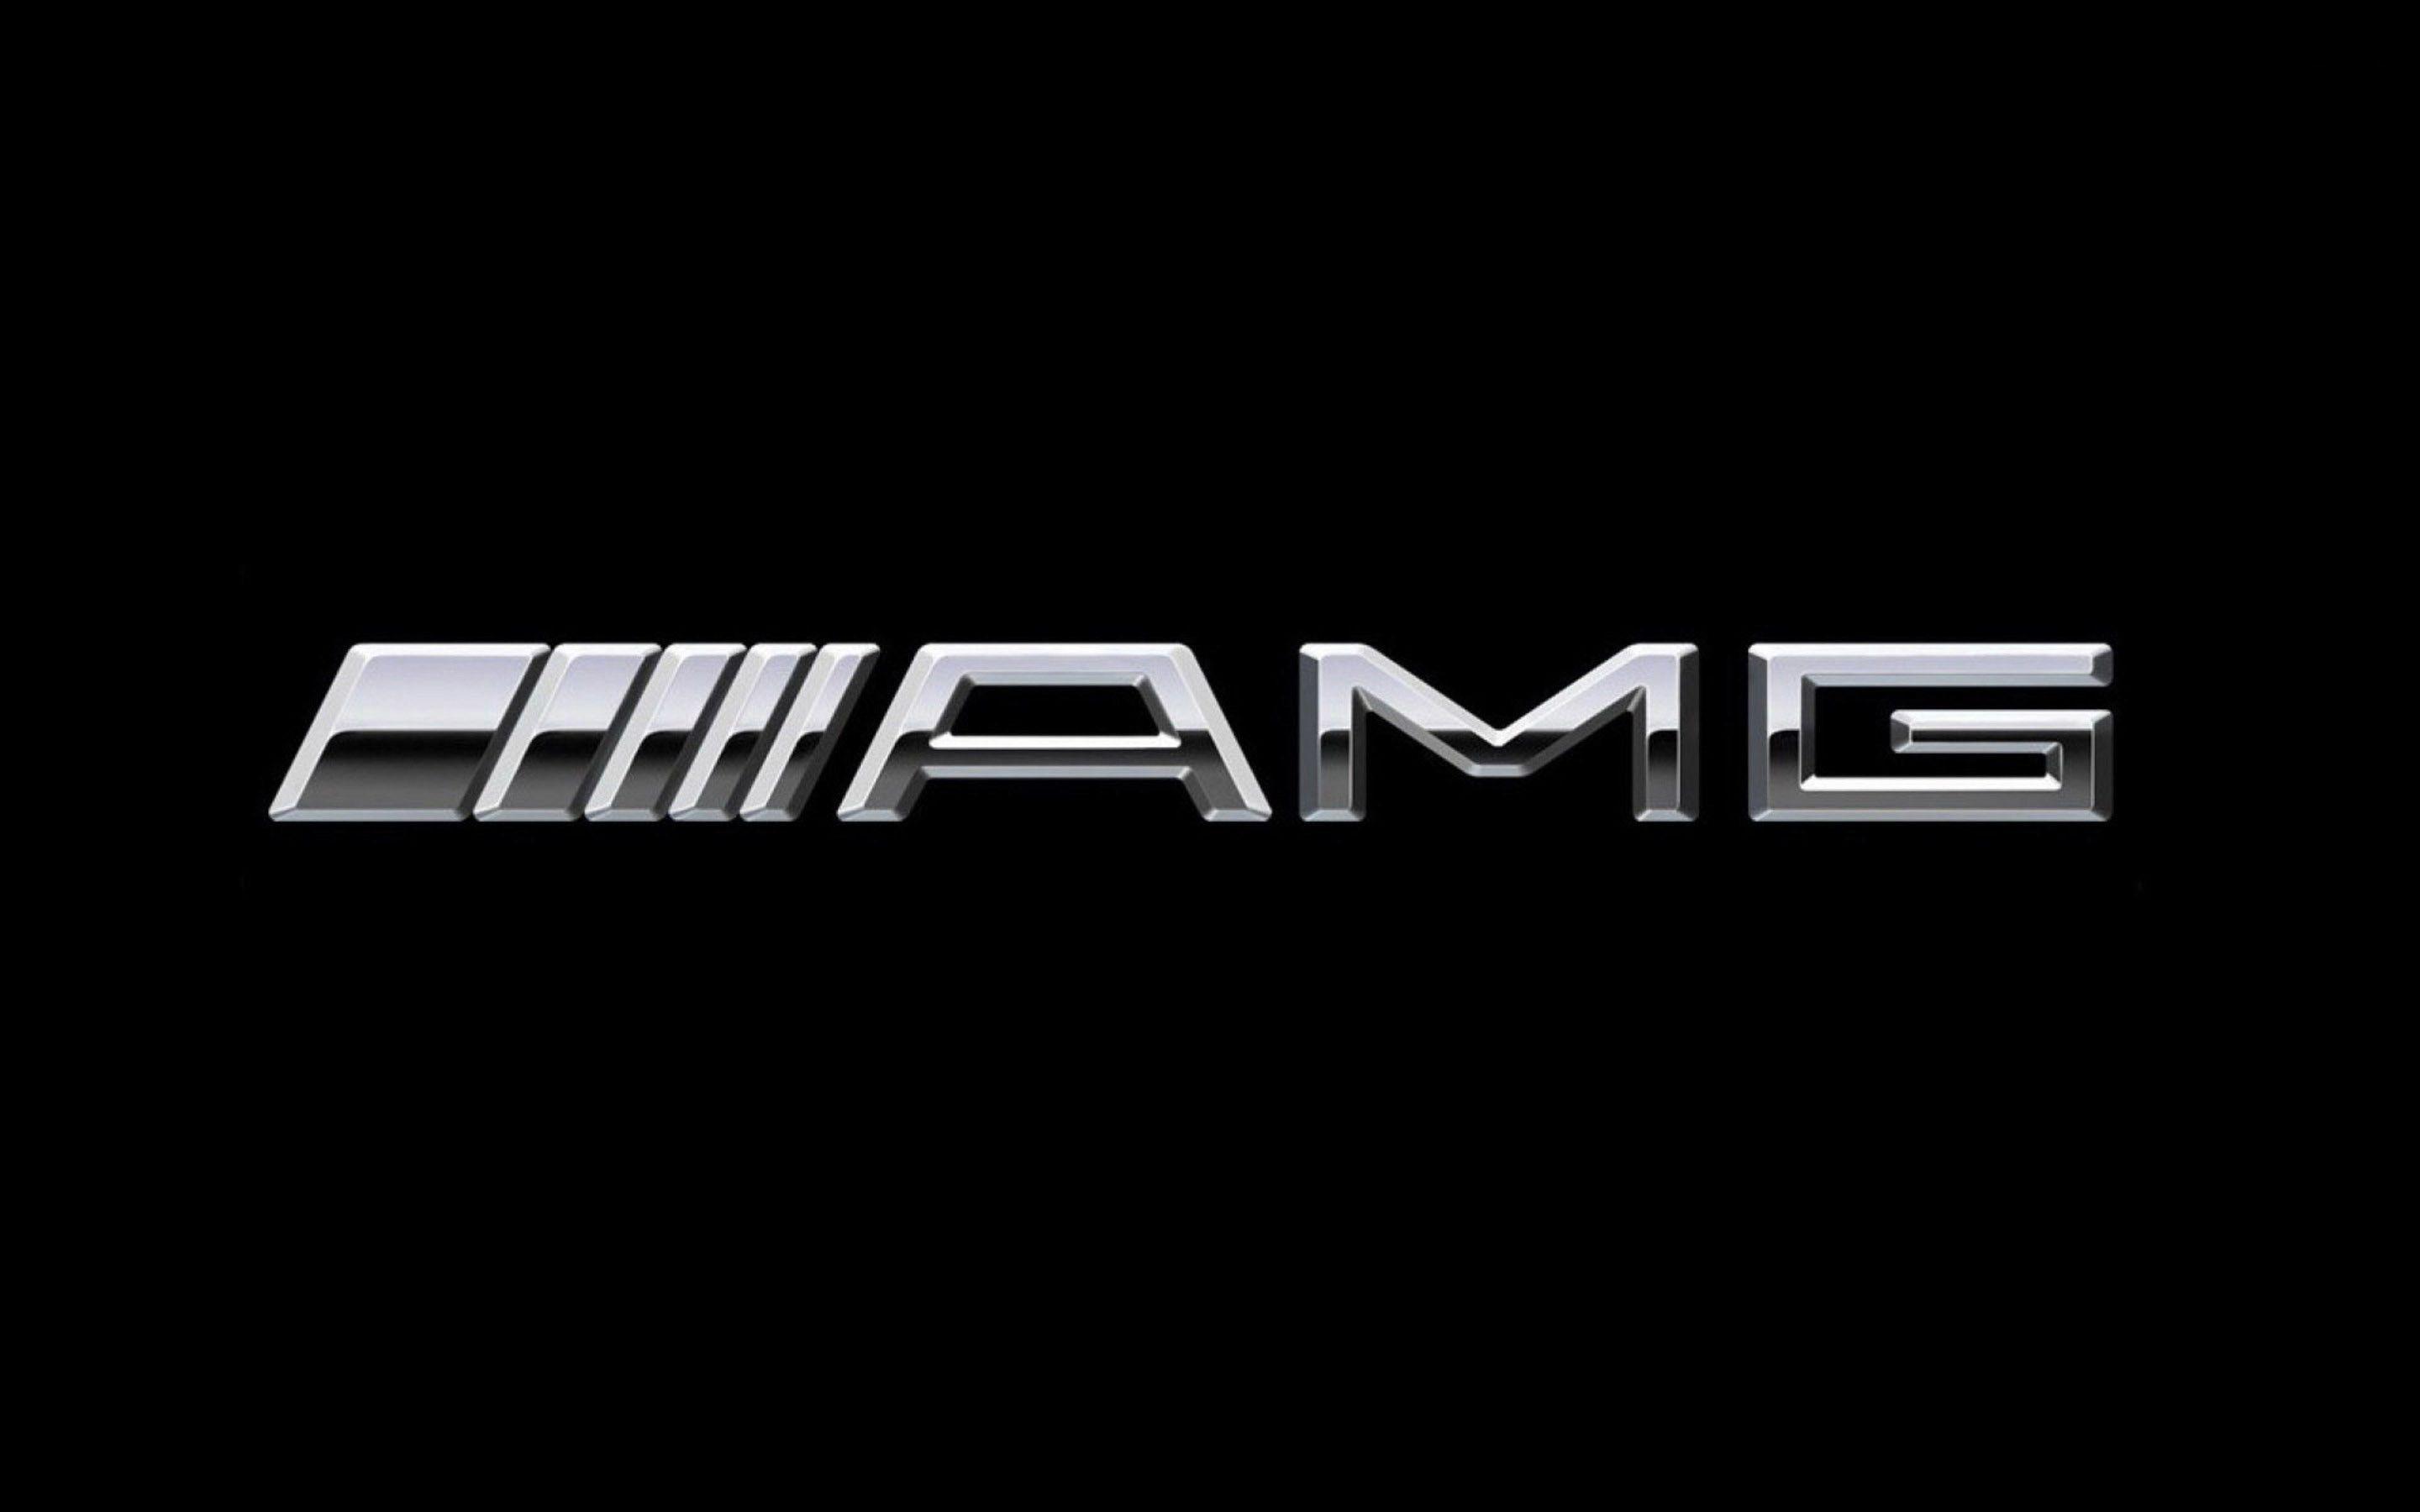 AMG Logo Wallpapers - Top Những Hình Ảnh Đẹp